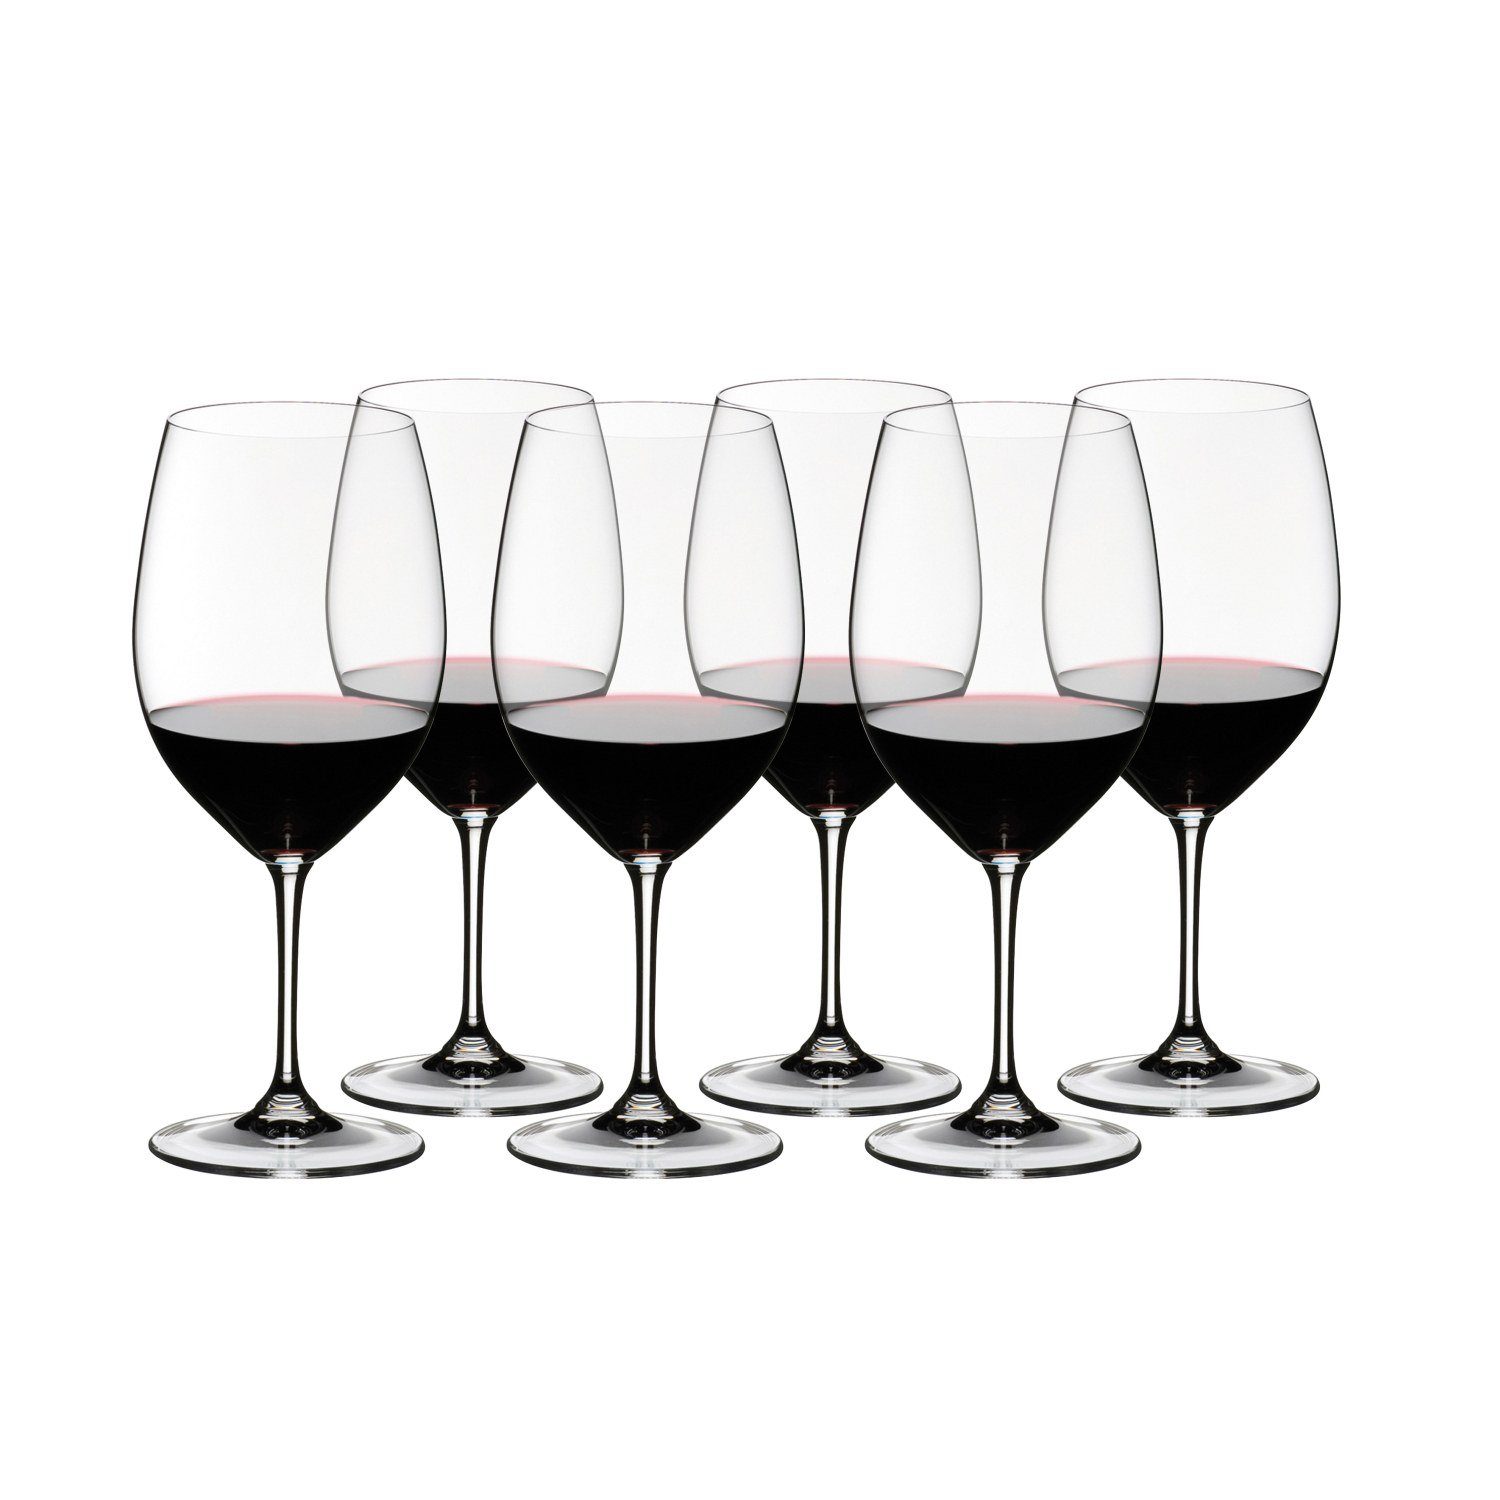 RIEDEL THE WINE GLASS COMPANY Weinglas Vinum Cabernet Sauvignon 6er Set, Kristallglas